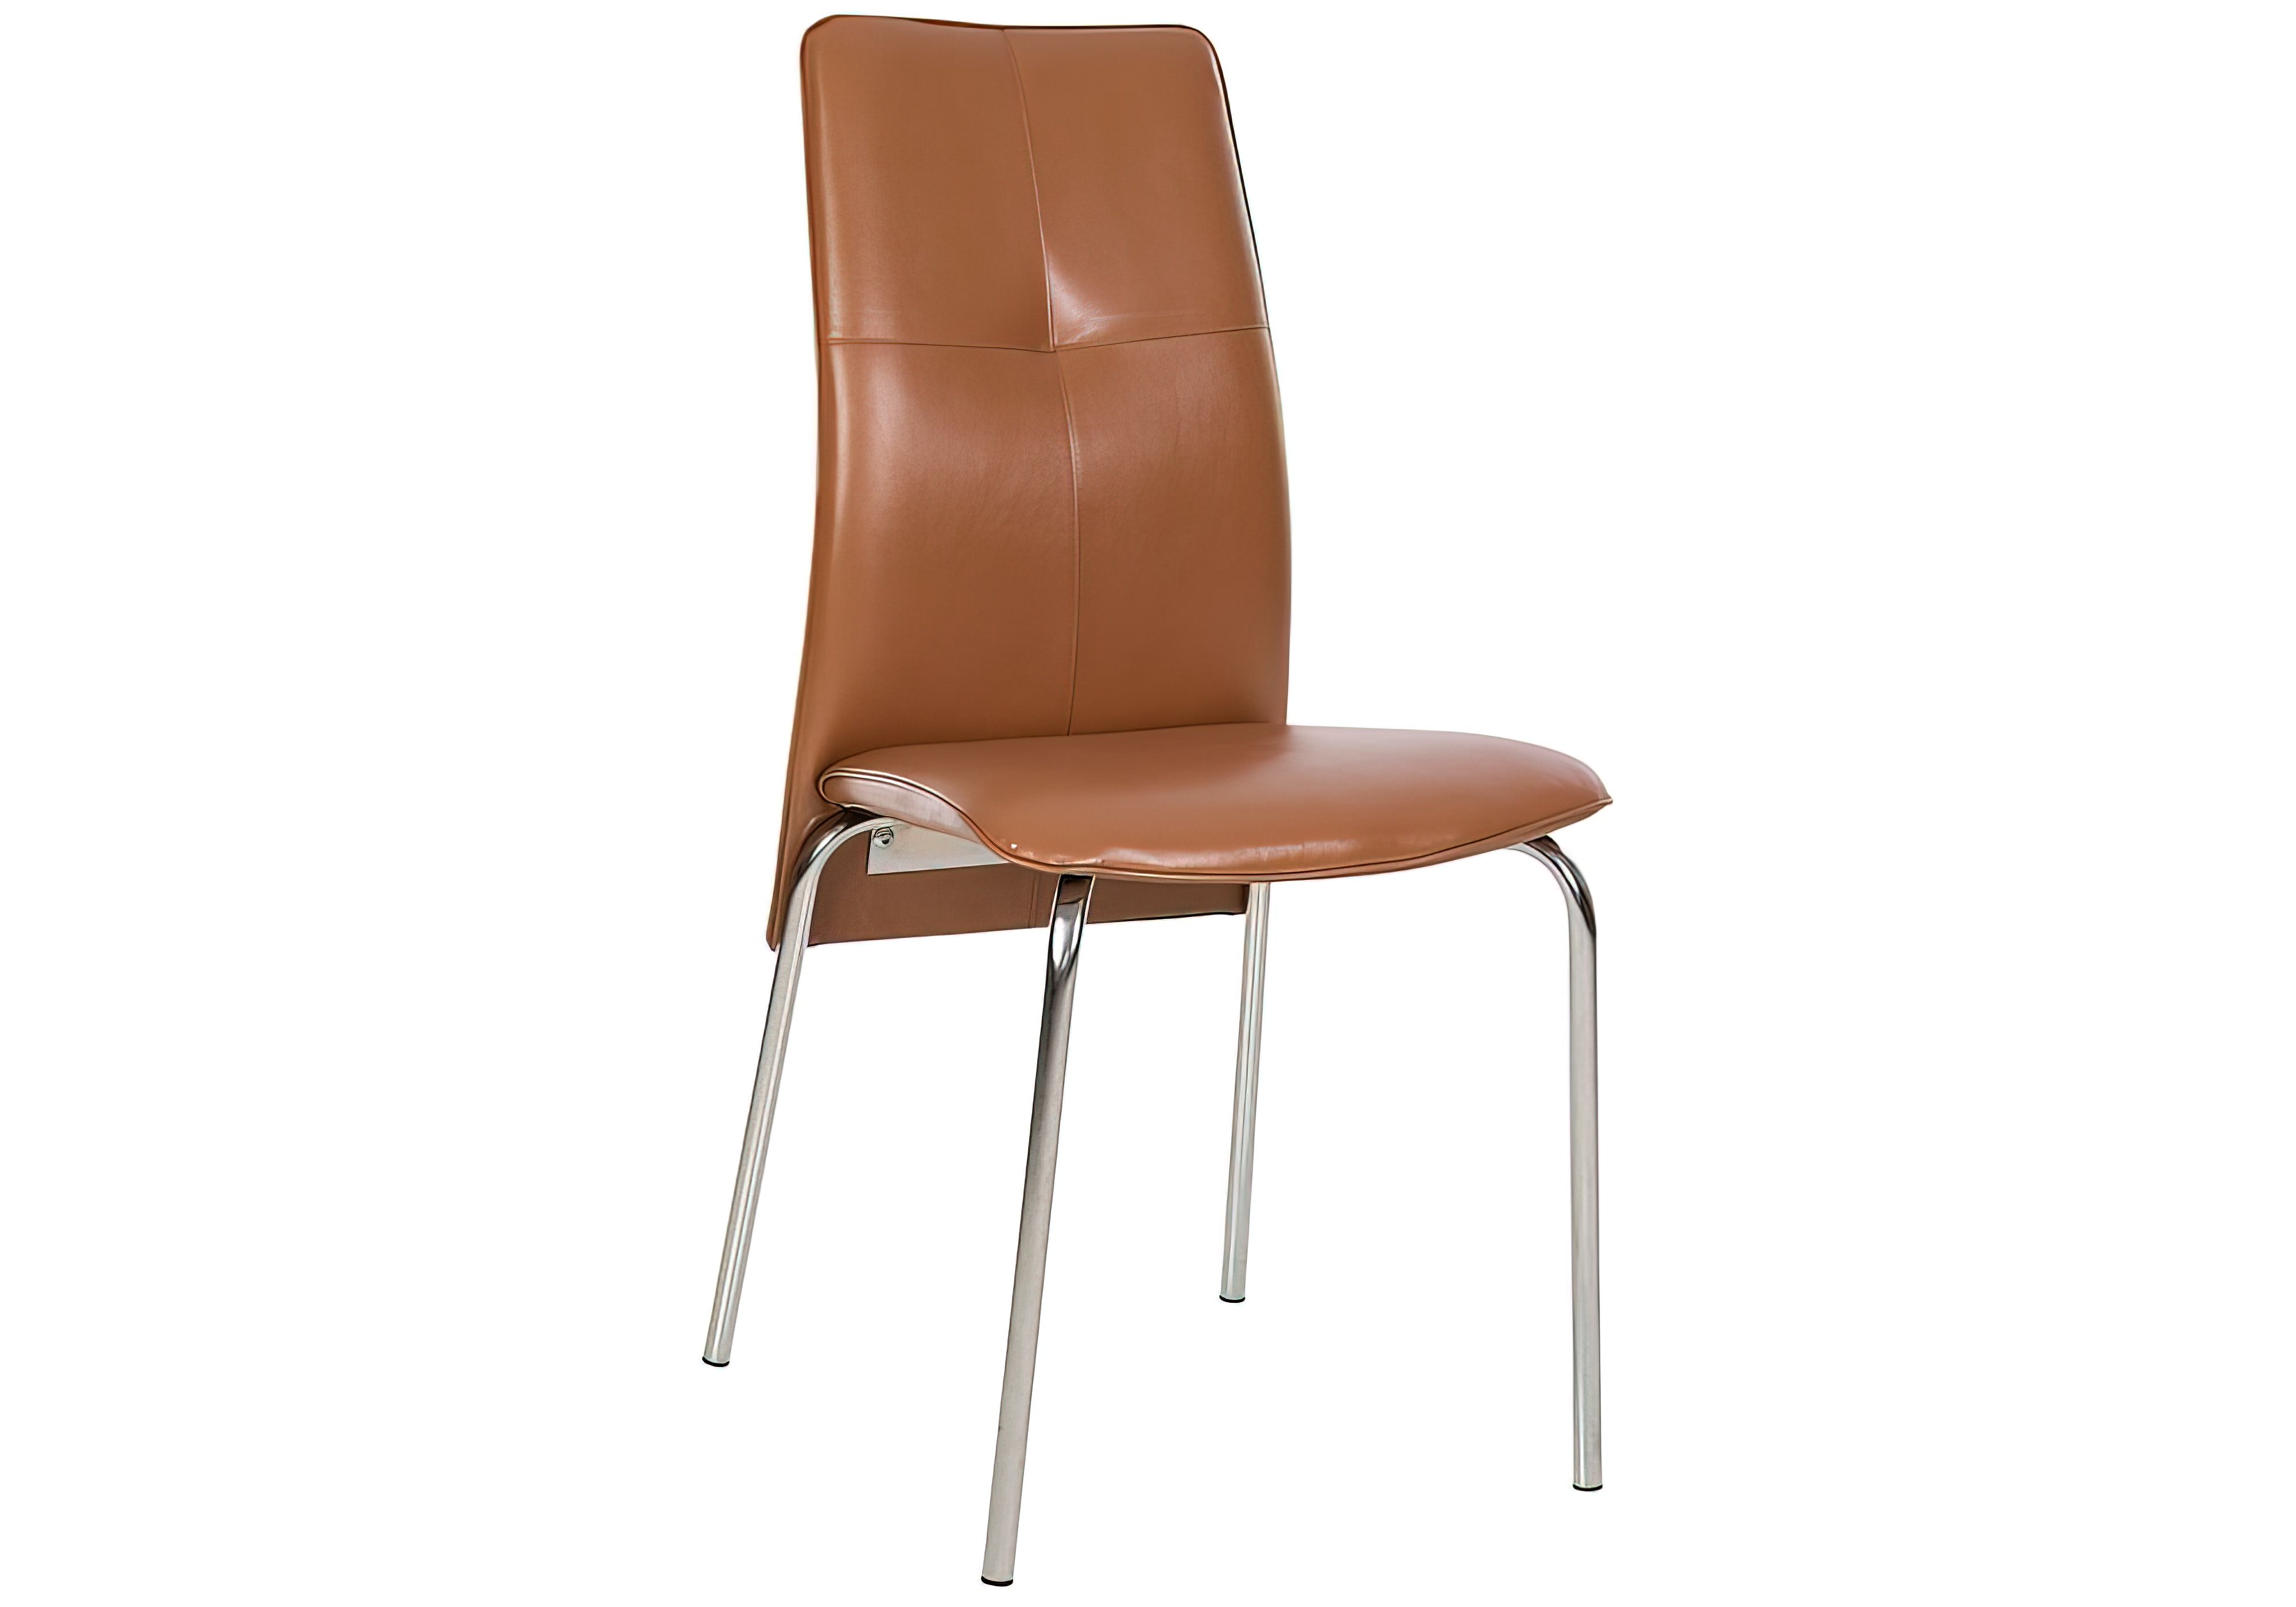 Кухонный стул Муза II Новый стиль, Тип Обеденный, Высота 93см